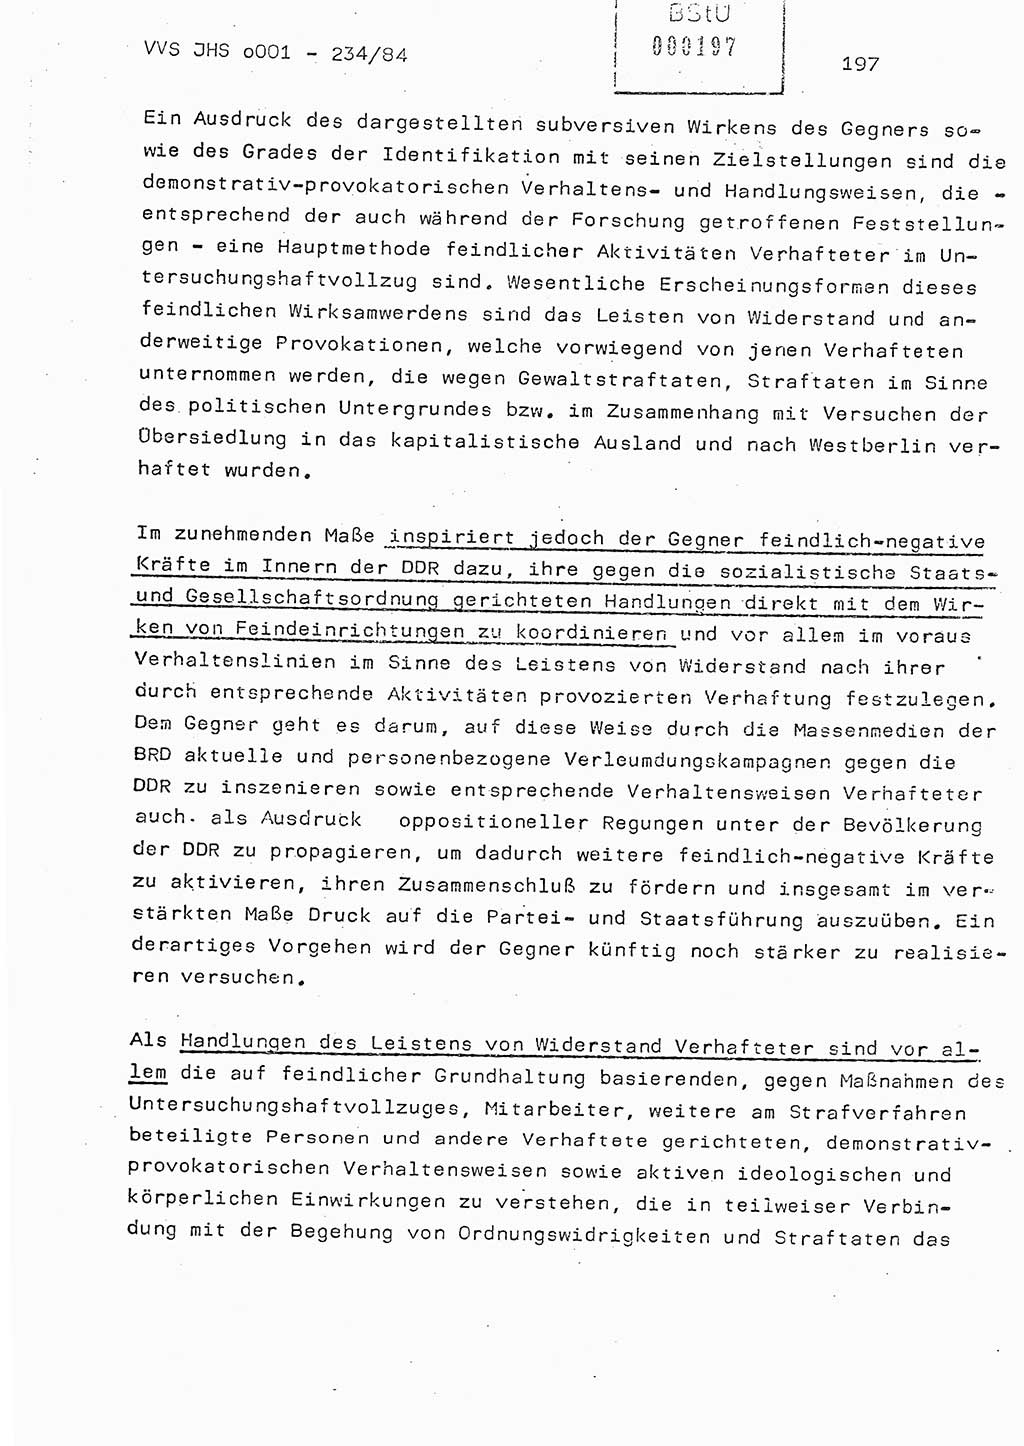 Dissertation Oberst Siegfried Rataizick (Abt. ⅩⅣ), Oberstleutnant Volkmar Heinz (Abt. ⅩⅣ), Oberstleutnant Werner Stein (HA Ⅸ), Hauptmann Heinz Conrad (JHS), Ministerium für Staatssicherheit (MfS) [Deutsche Demokratische Republik (DDR)], Juristische Hochschule (JHS), Vertrauliche Verschlußsache (VVS) o001-234/84, Potsdam 1984, Seite 197 (Diss. MfS DDR JHS VVS o001-234/84 1984, S. 197)